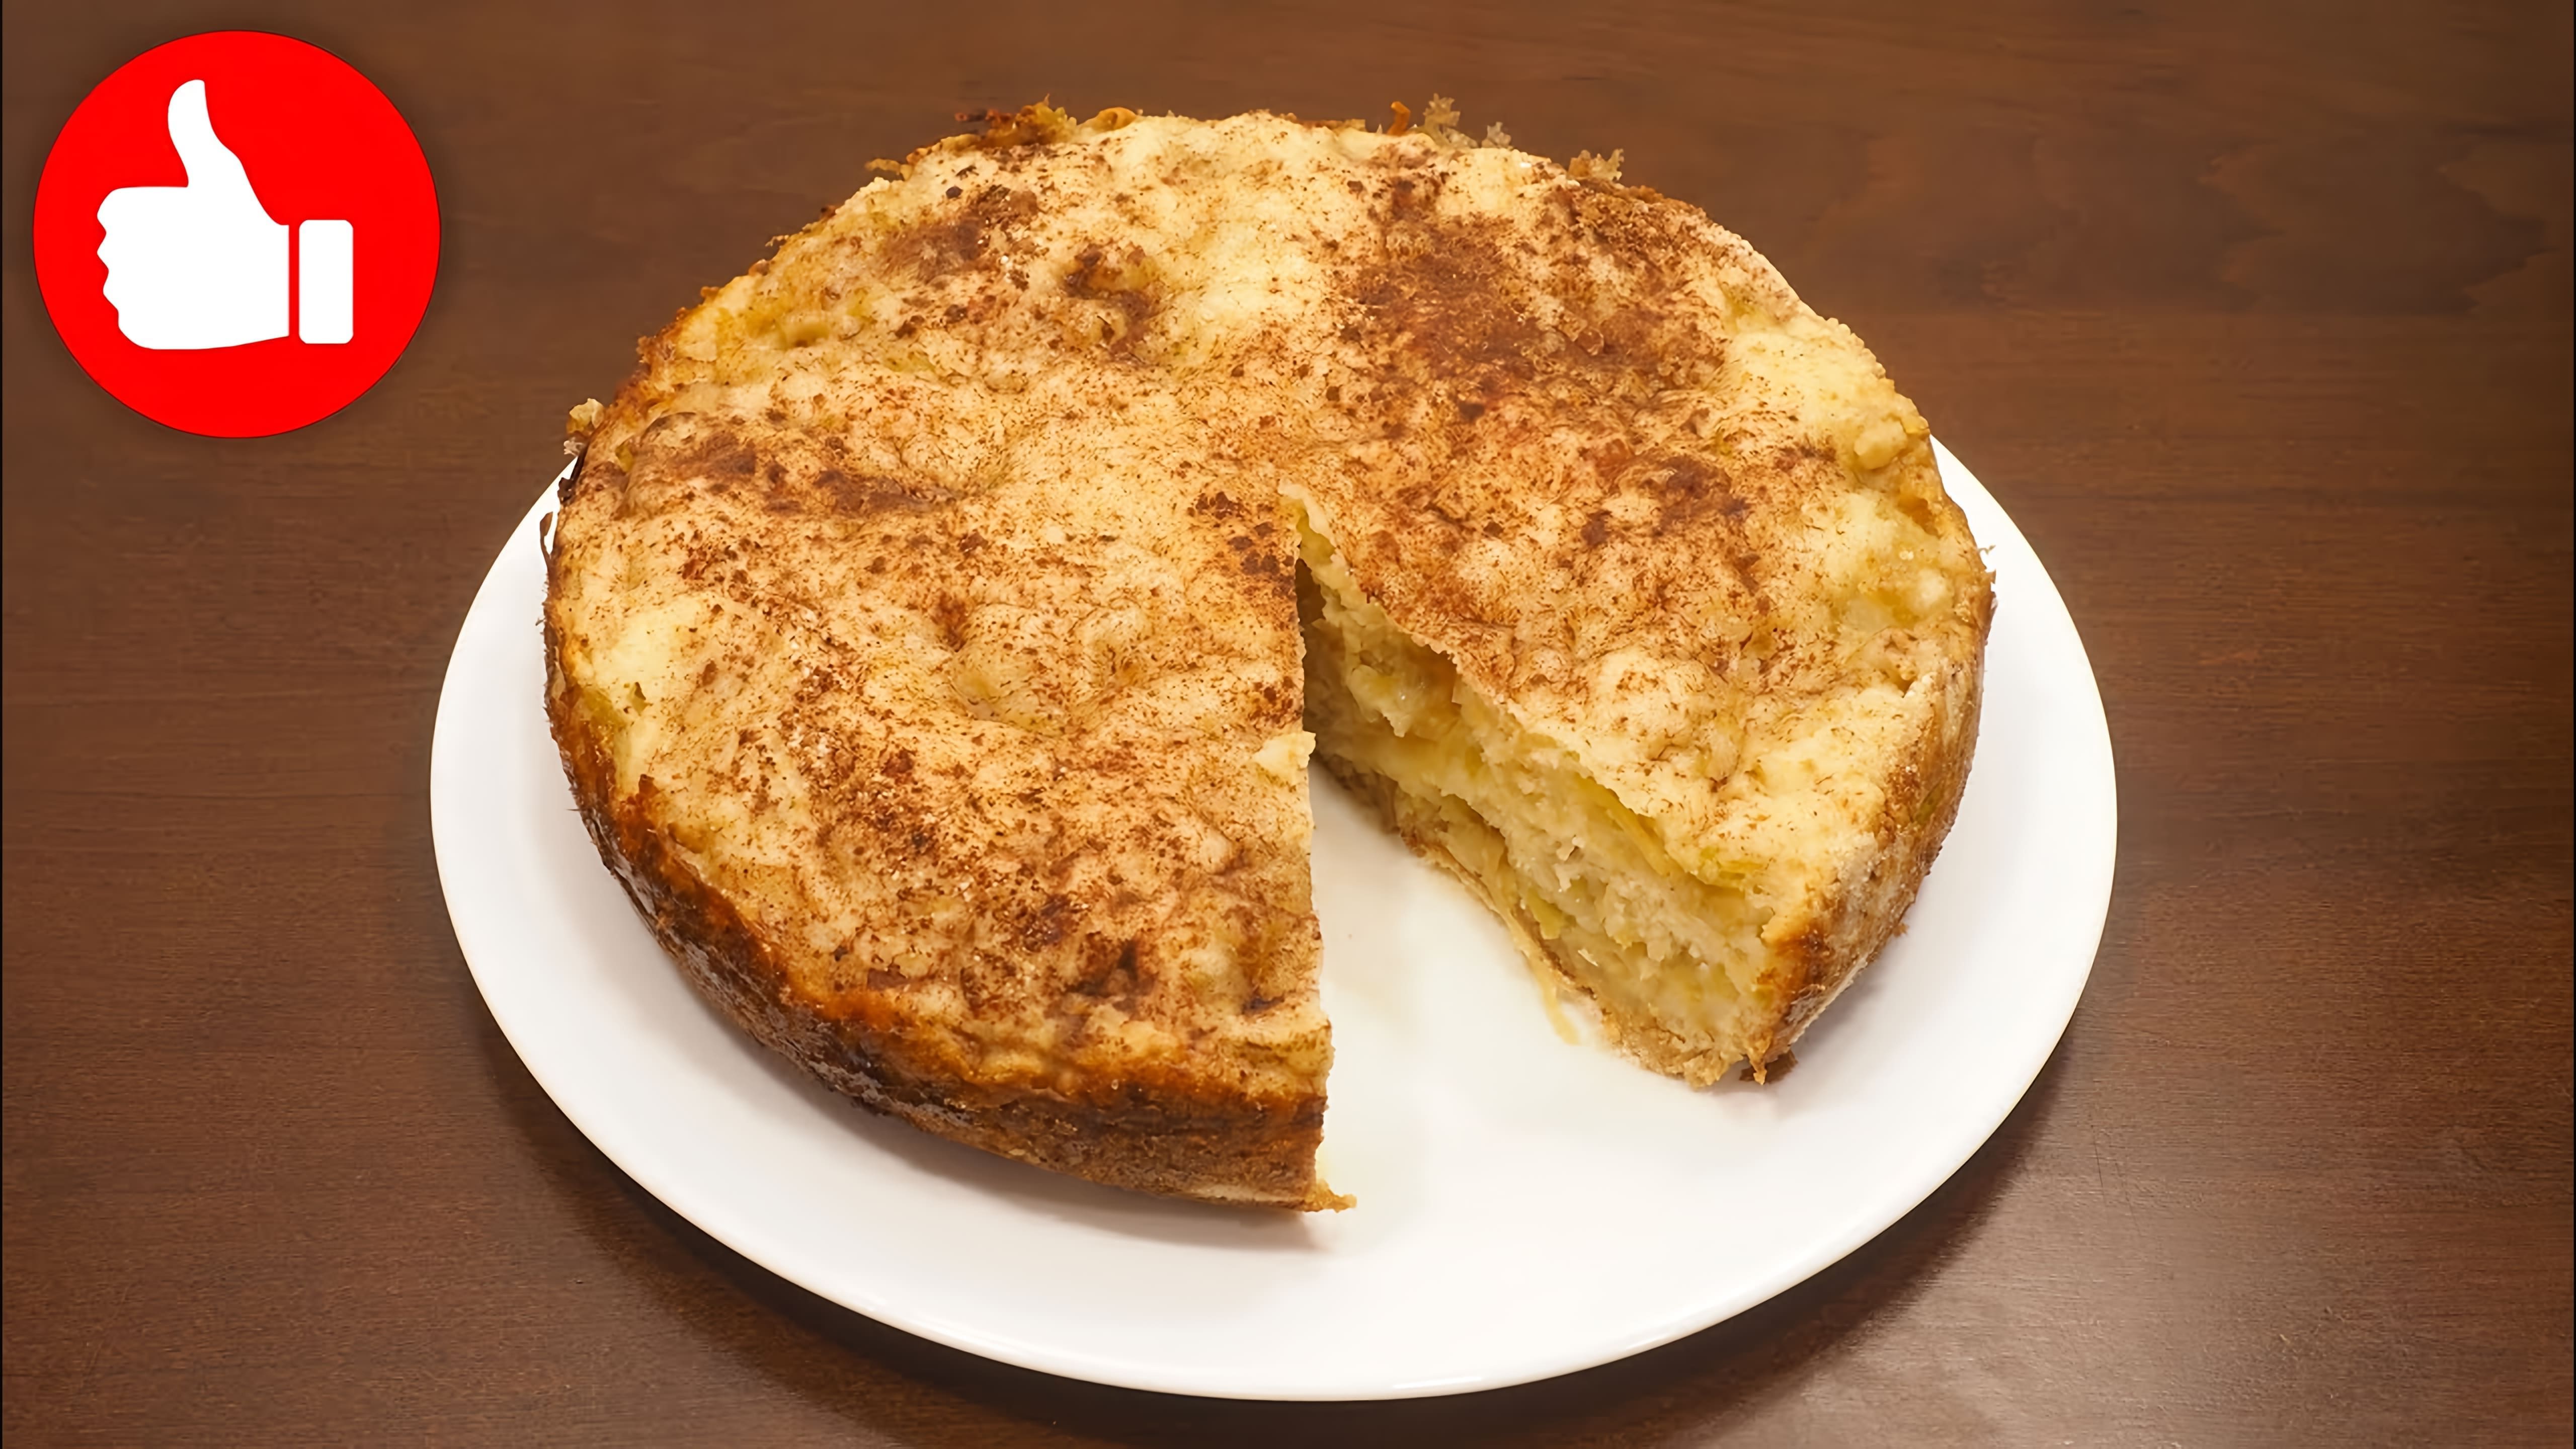 В этом видео демонстрируется рецепт насыпного яблочного пирога, который готовится в мультиварке